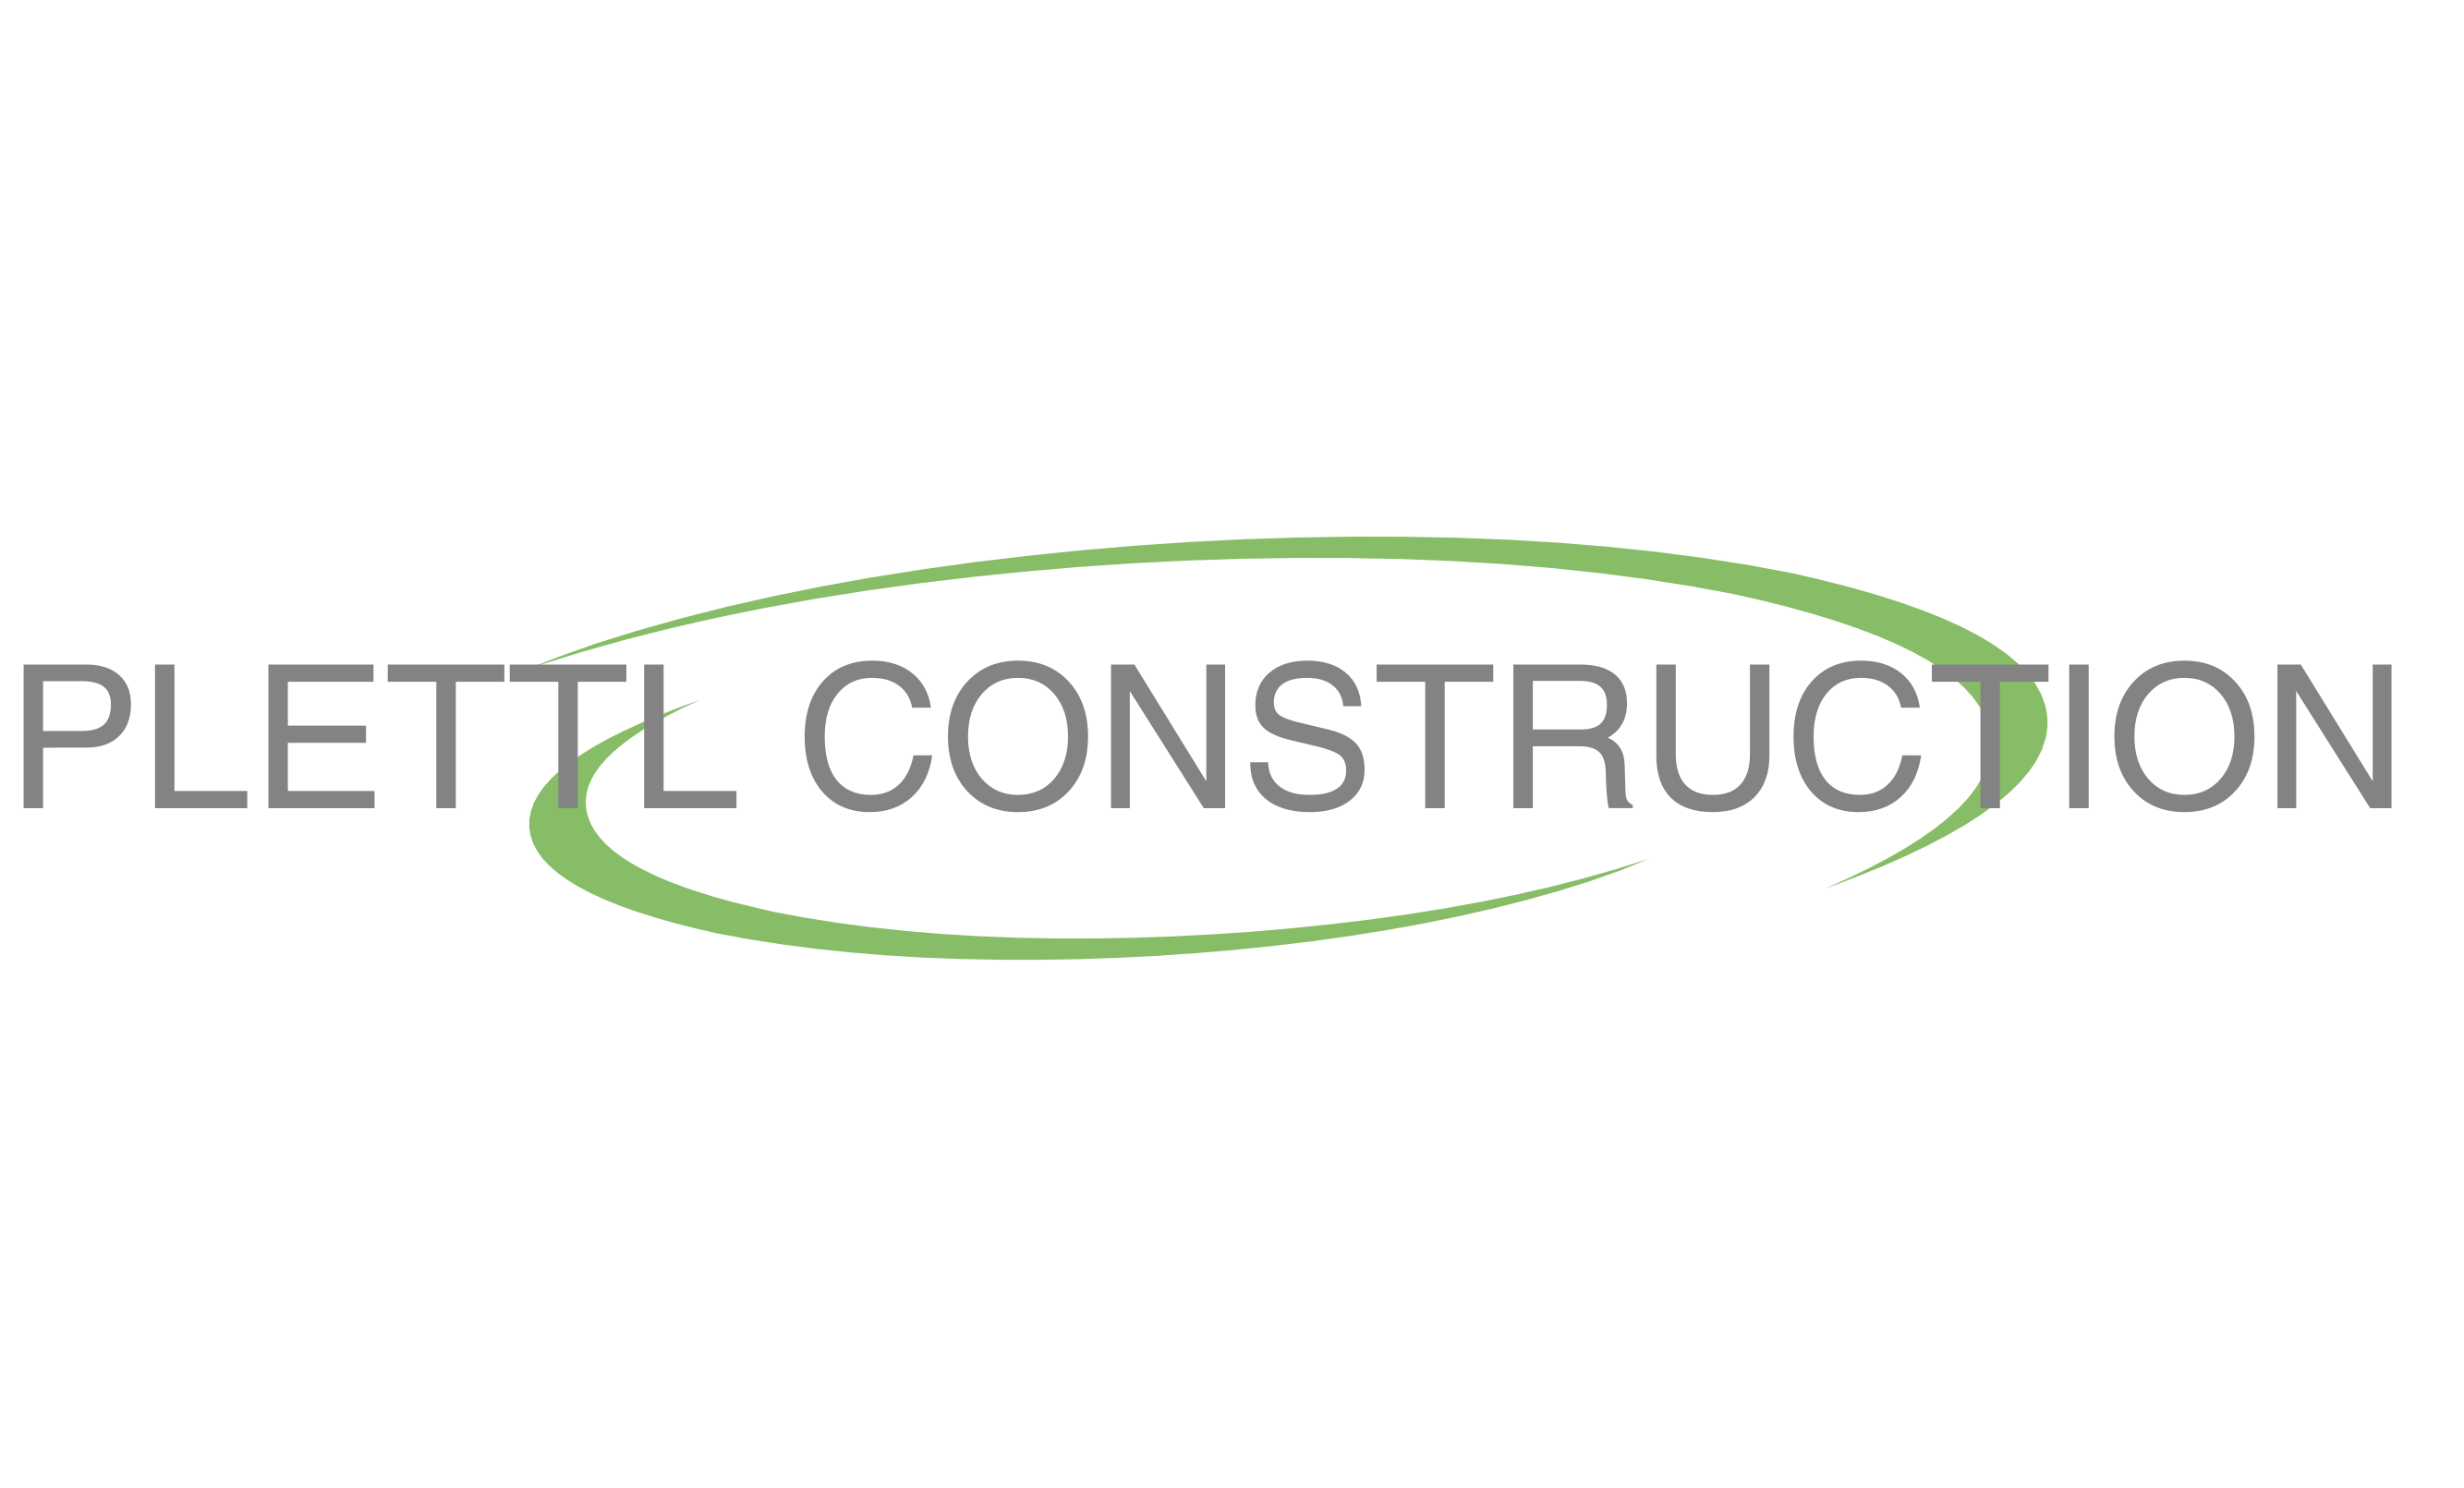 Plettl Construction's logo